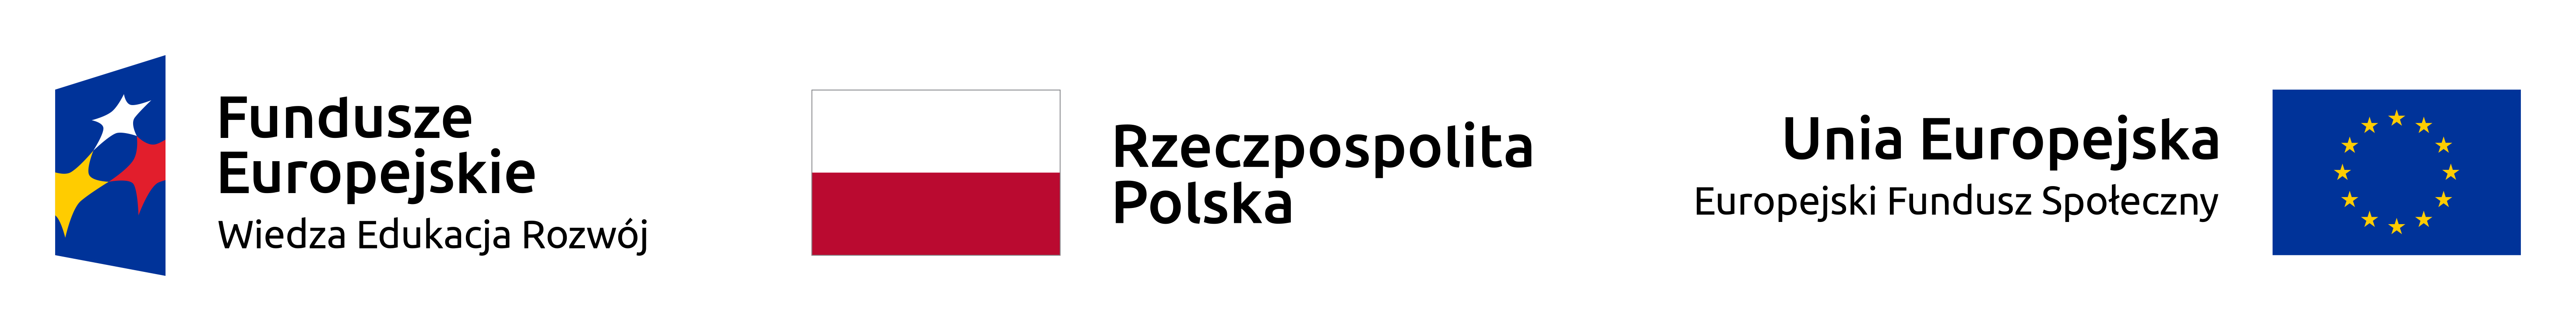 Zestawienie logotypów zawierające od lewej: znak Funduszy Europejskich z podpisem Fundusze Europejskie Wiedza Edukacja Rozwój oraz flaga flaga Polski - z podpisem Rzeczpospolita Polska i flaga Unii Europejskiej z podpisem Unia Europejska Europejski Fundusz Społeczny.